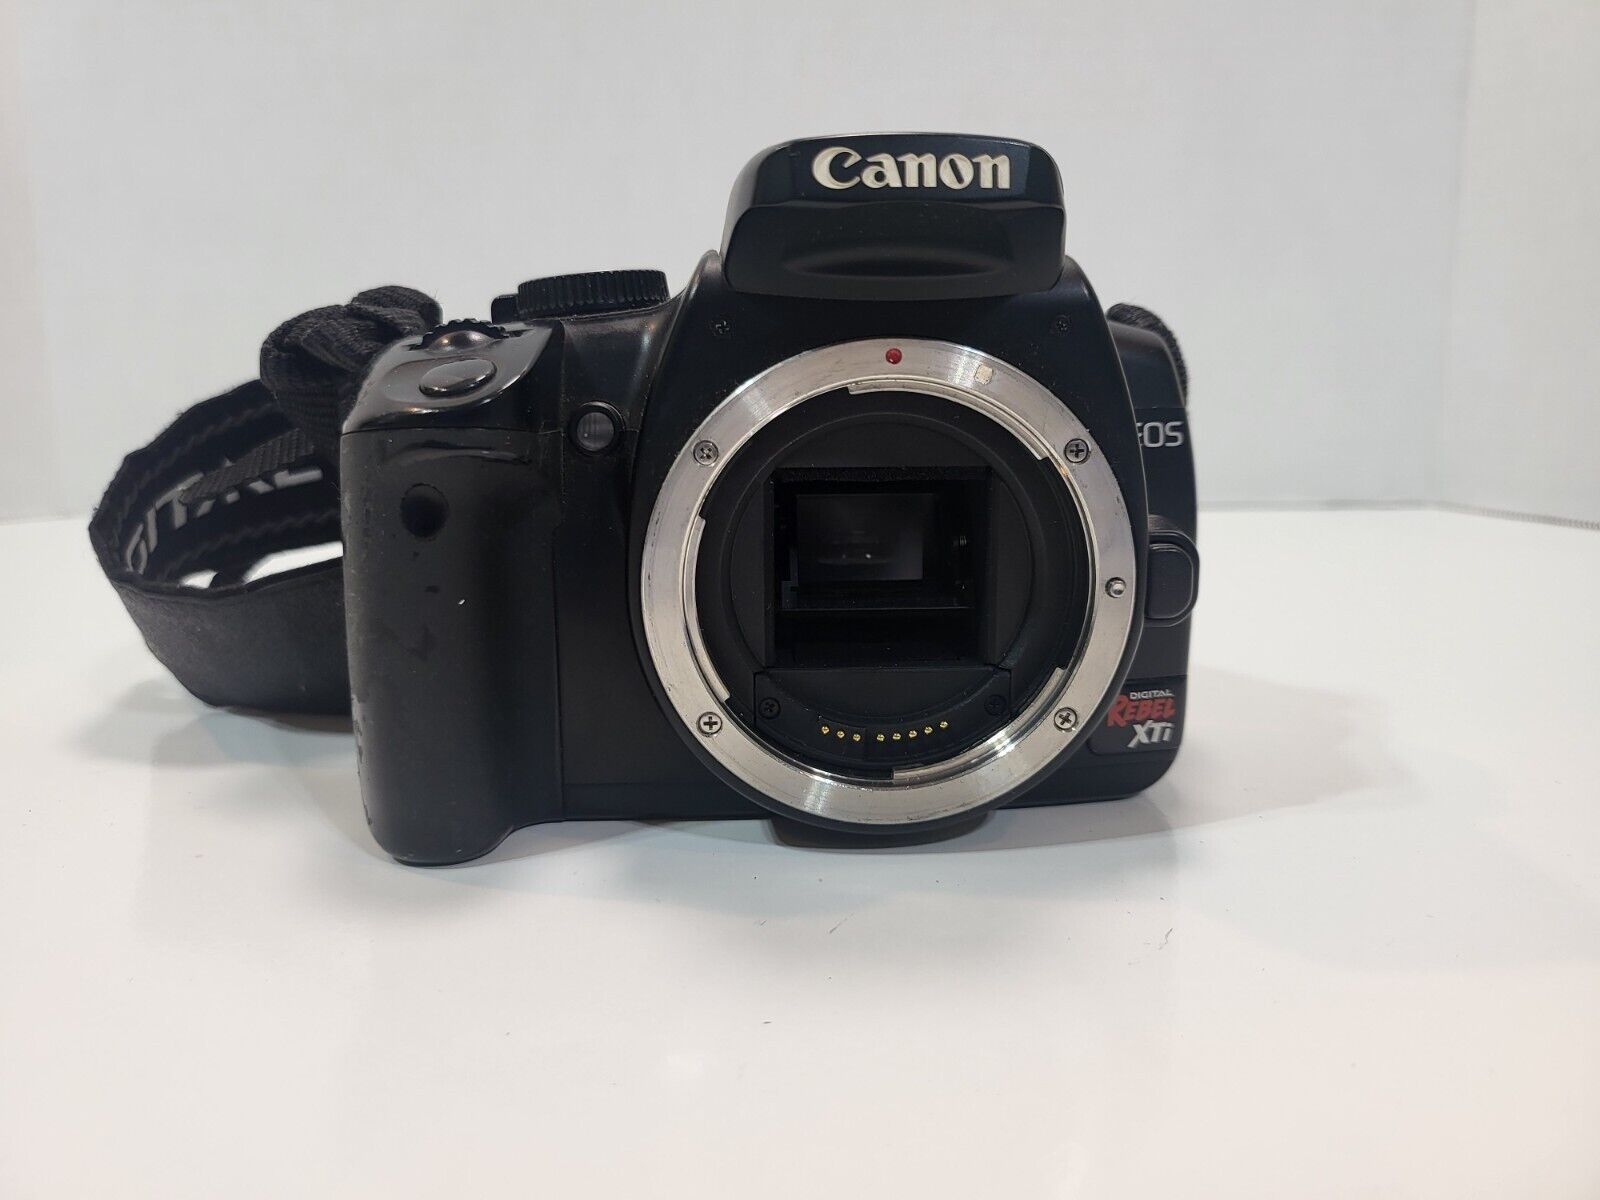 Canon DS126151 EOS REBEL XTI Black 2.0